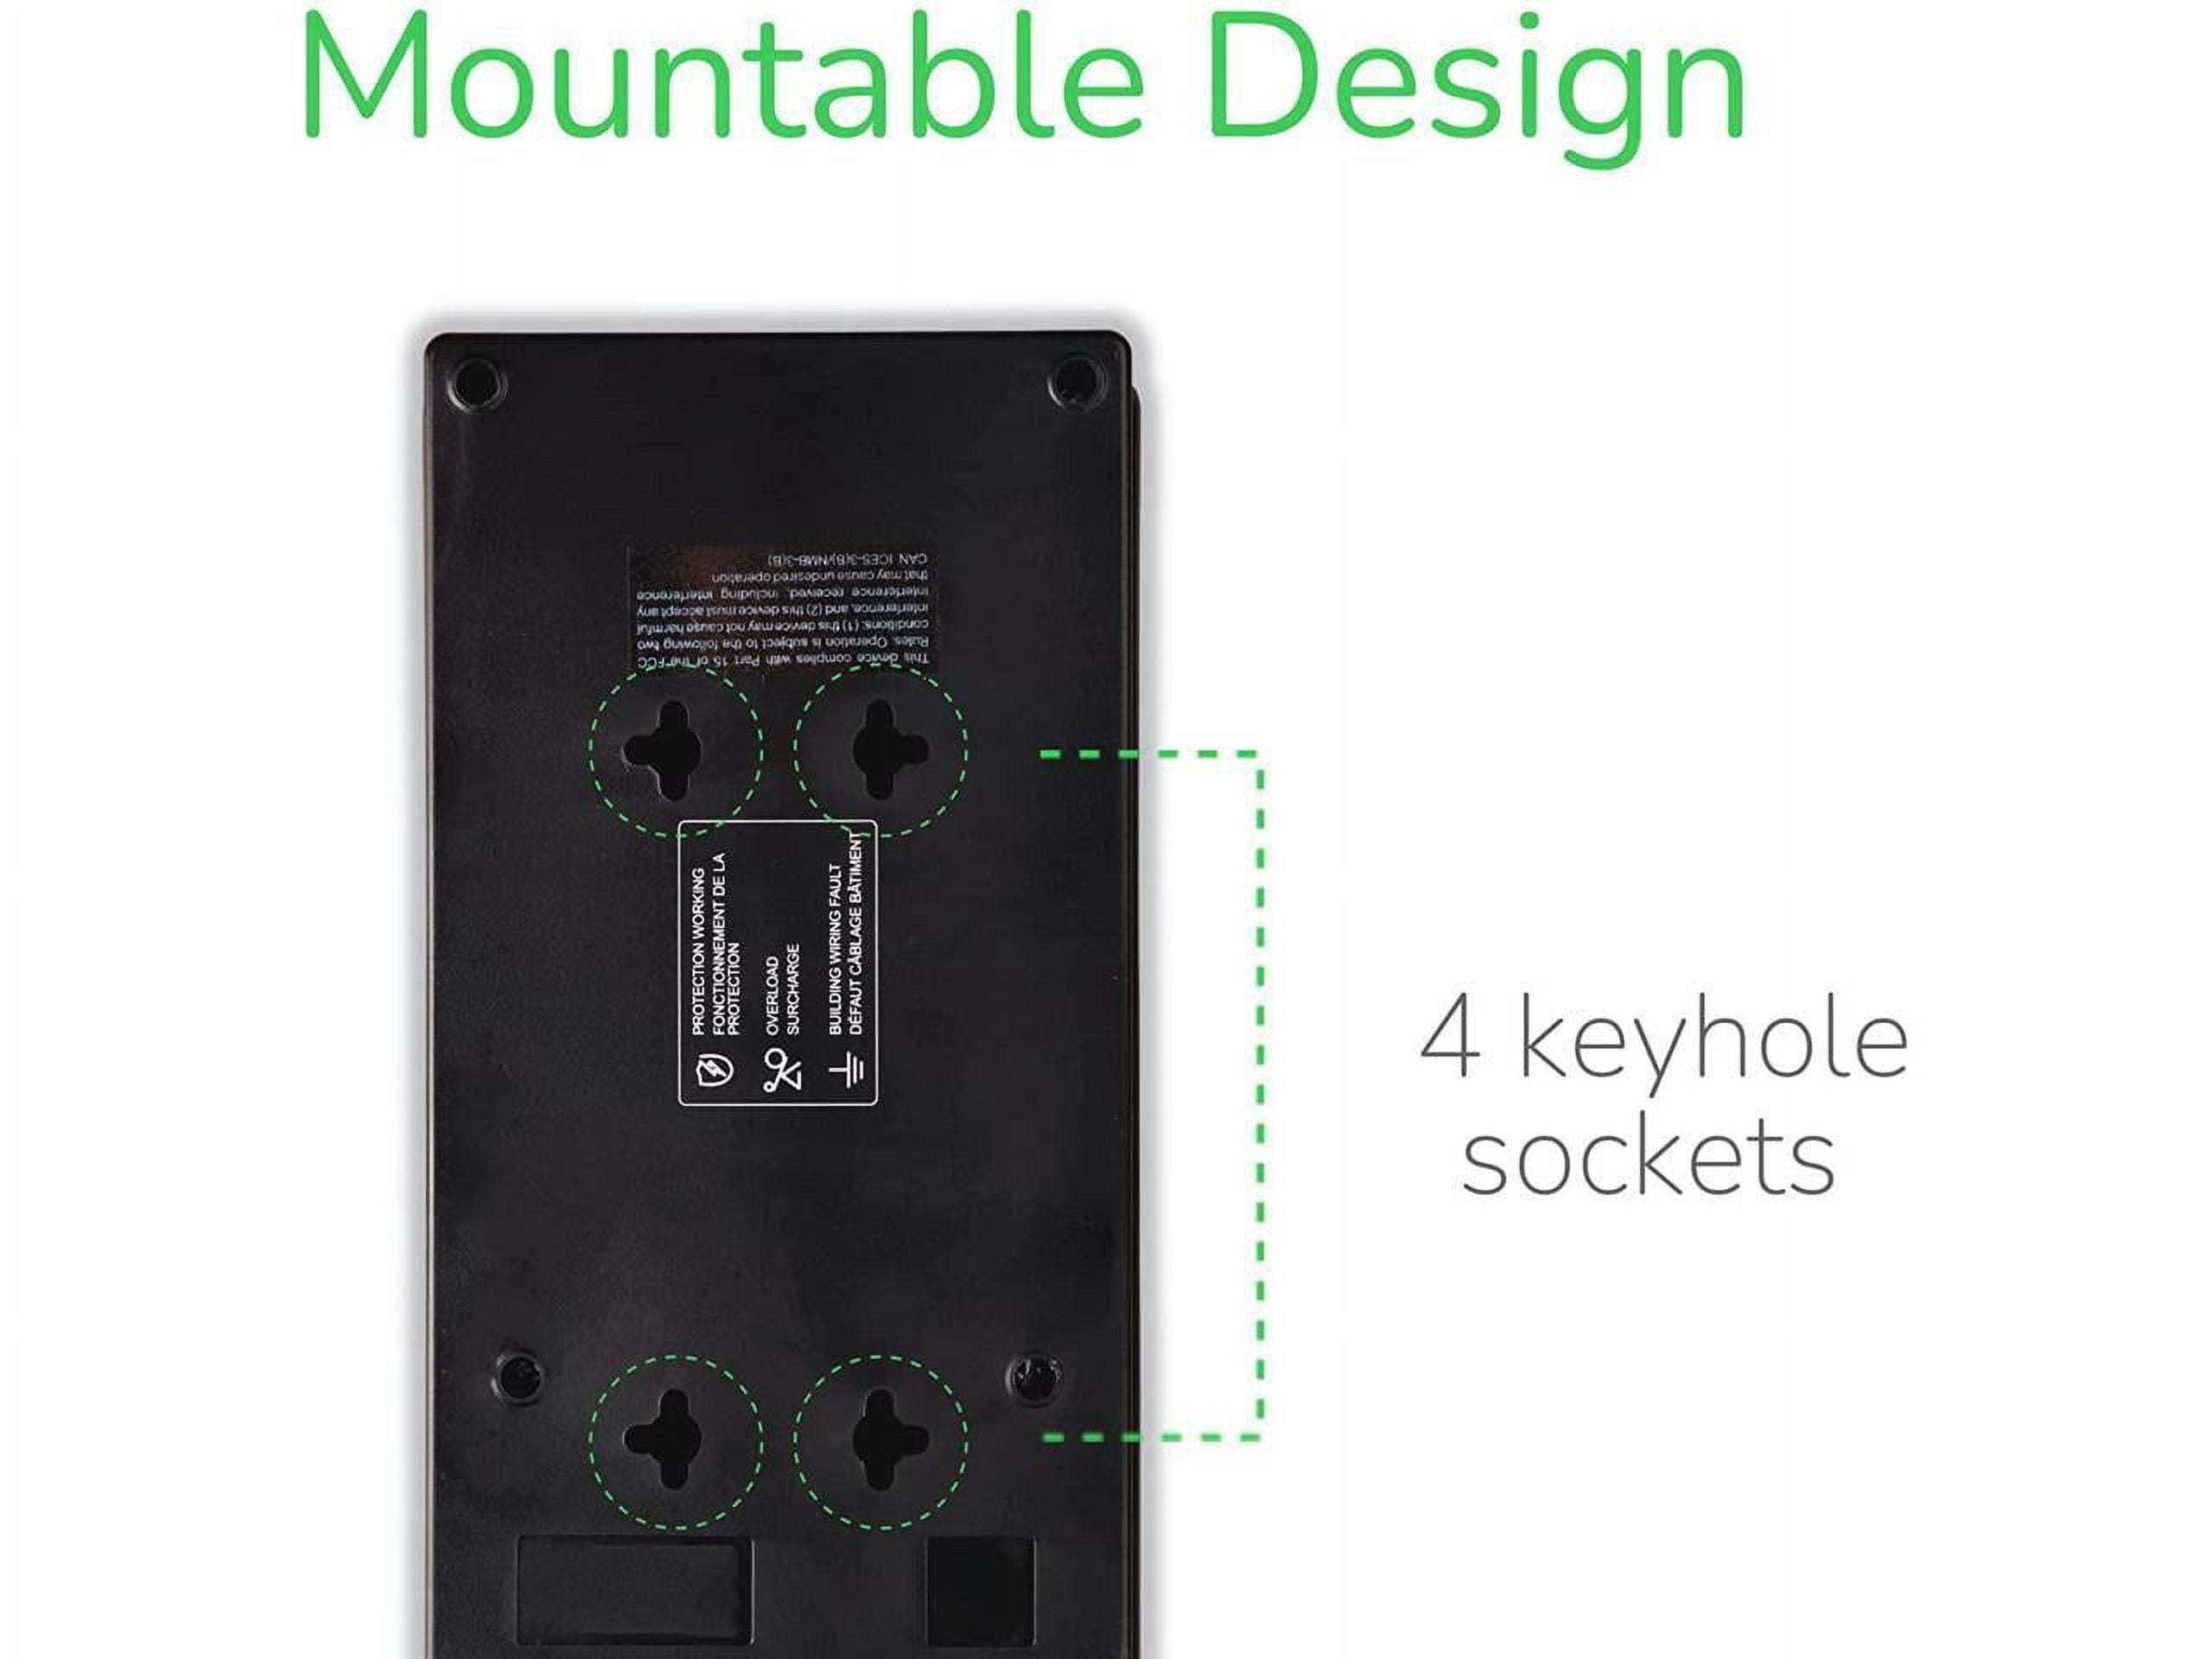 Multiprises APC Essential SurgeArrest 2 Ports USB Noir - SCHNEIDER